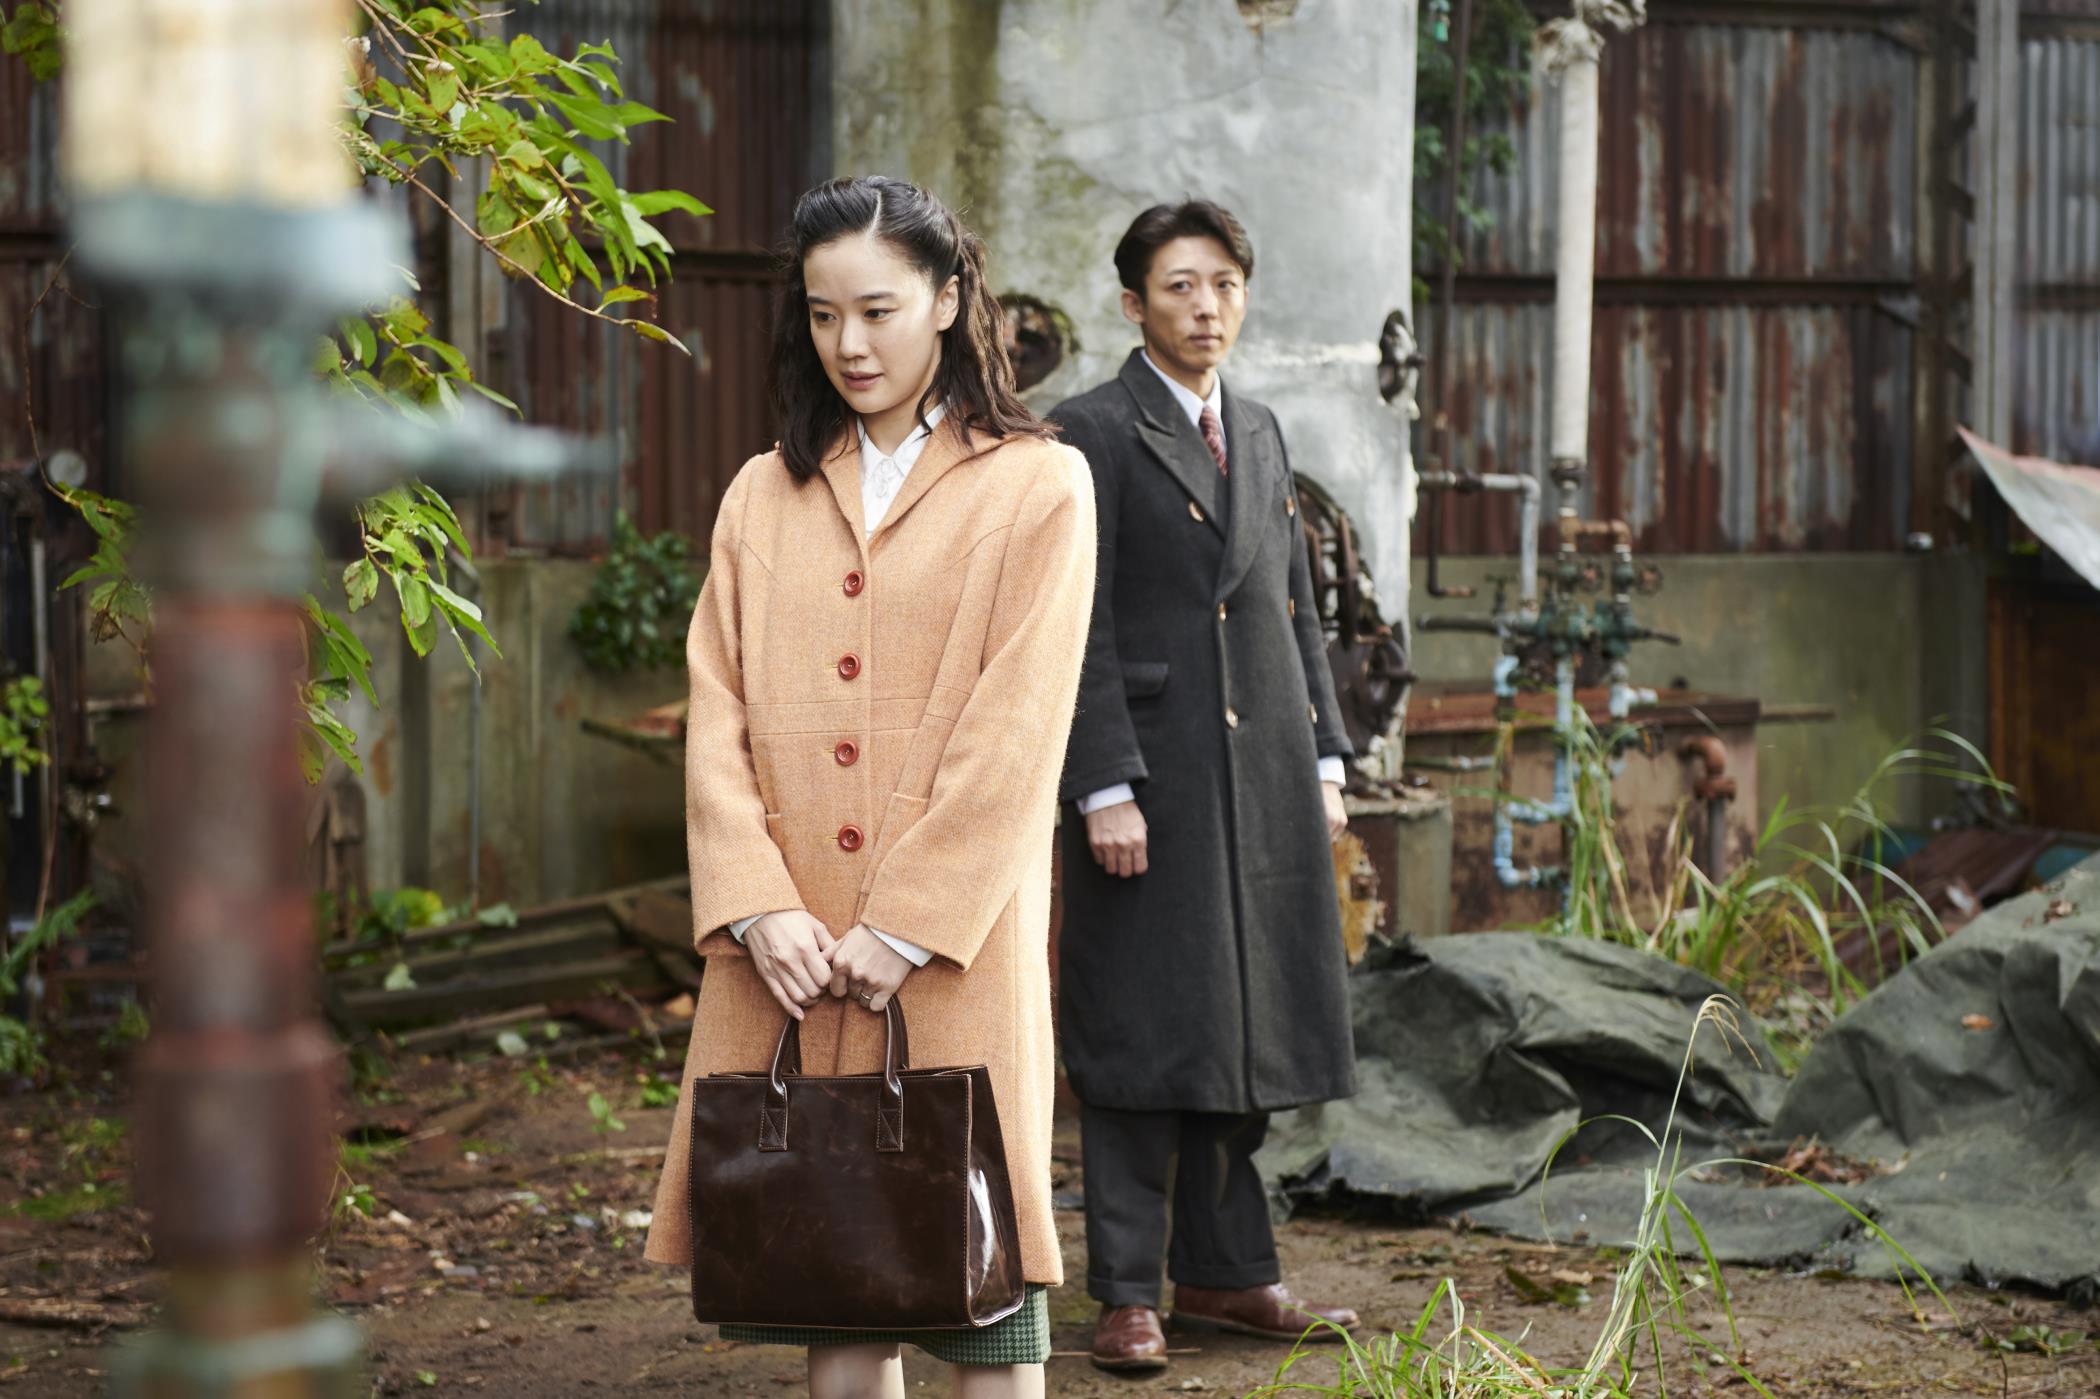 Trailer Spy No Tsuma (Wife Of A Spy) di Kiyoshi Kurosawa